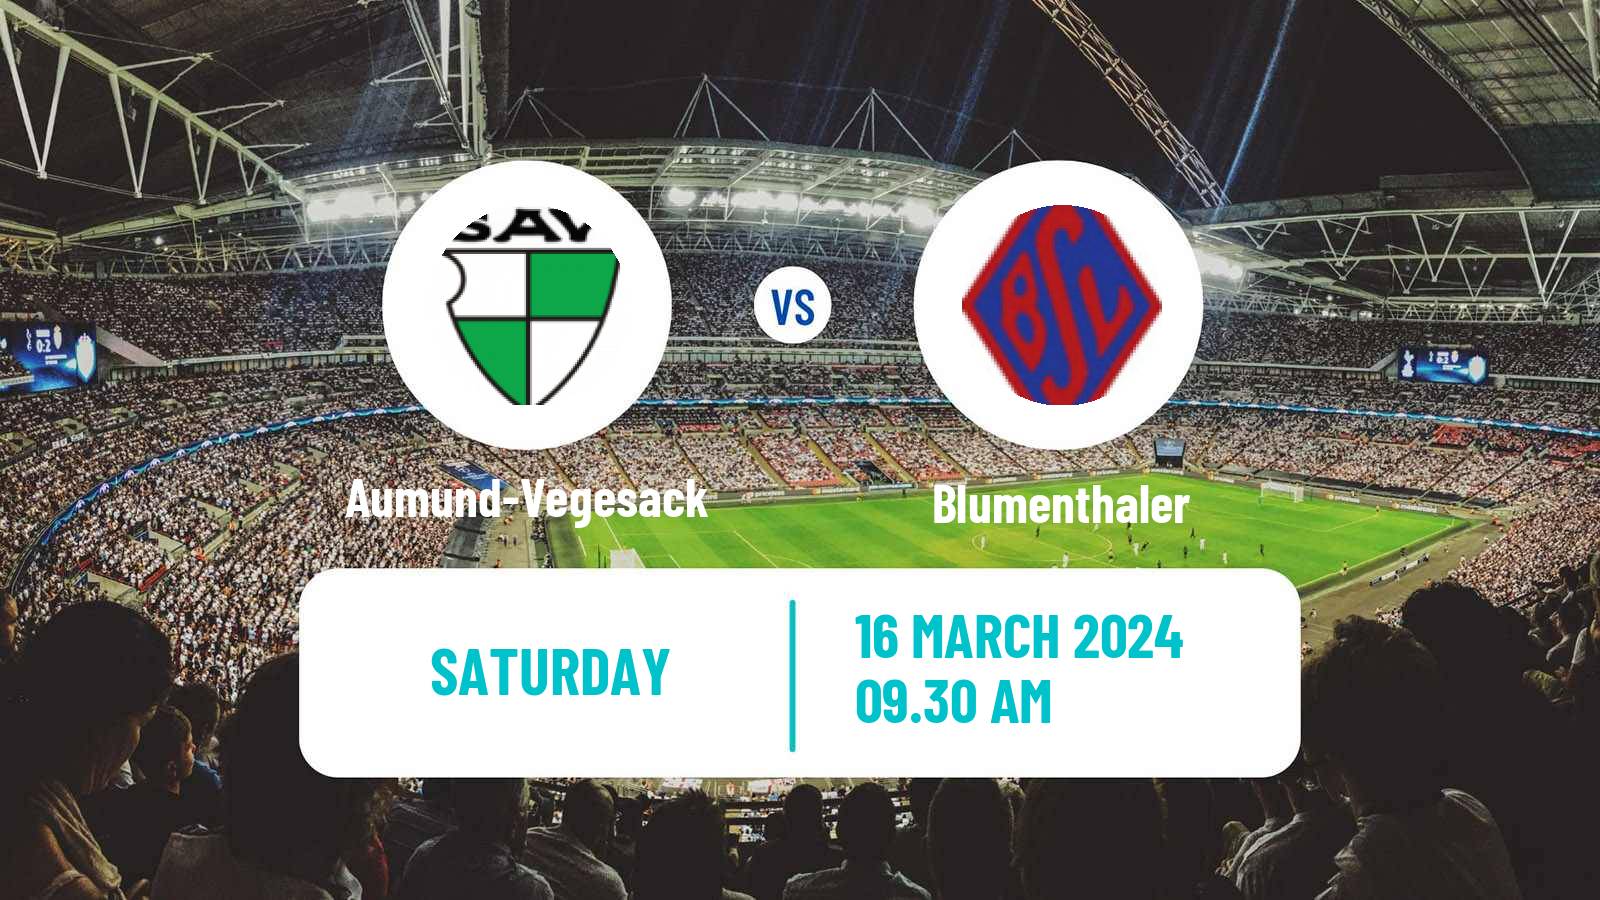 Soccer German Oberliga Bremen Aumund-Vegesack - Blumenthaler